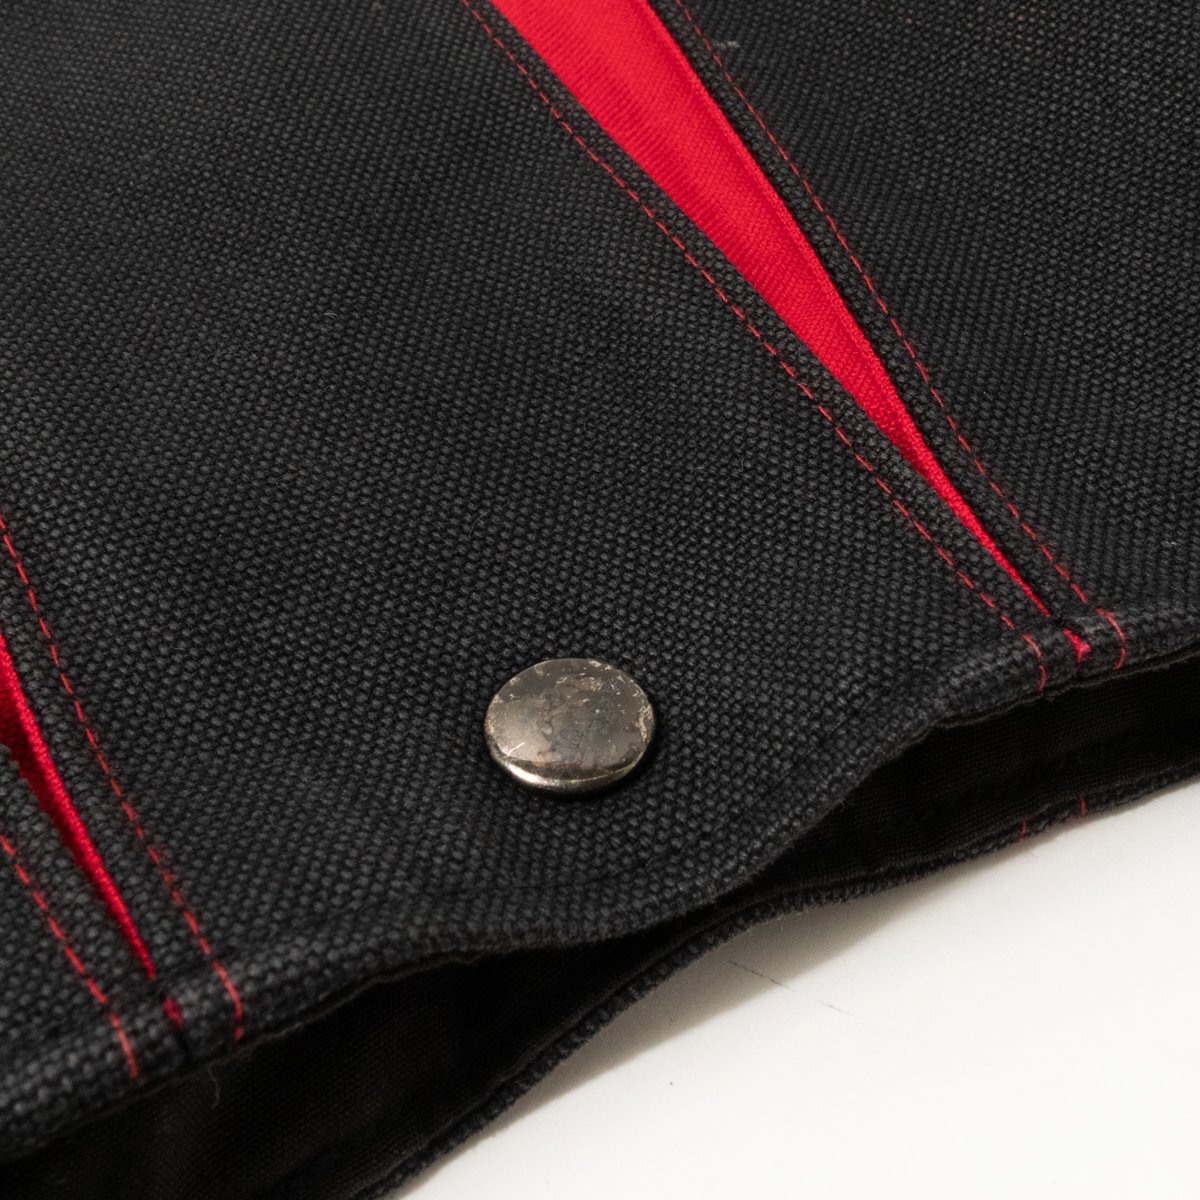 光章 こうしょう 京都KOSHO ショルダーバッグ ブラック 黒 レッド 赤 綿100% 日本製 レディース 斜め掛け シンプル カジュアル bag 鞄_画像6